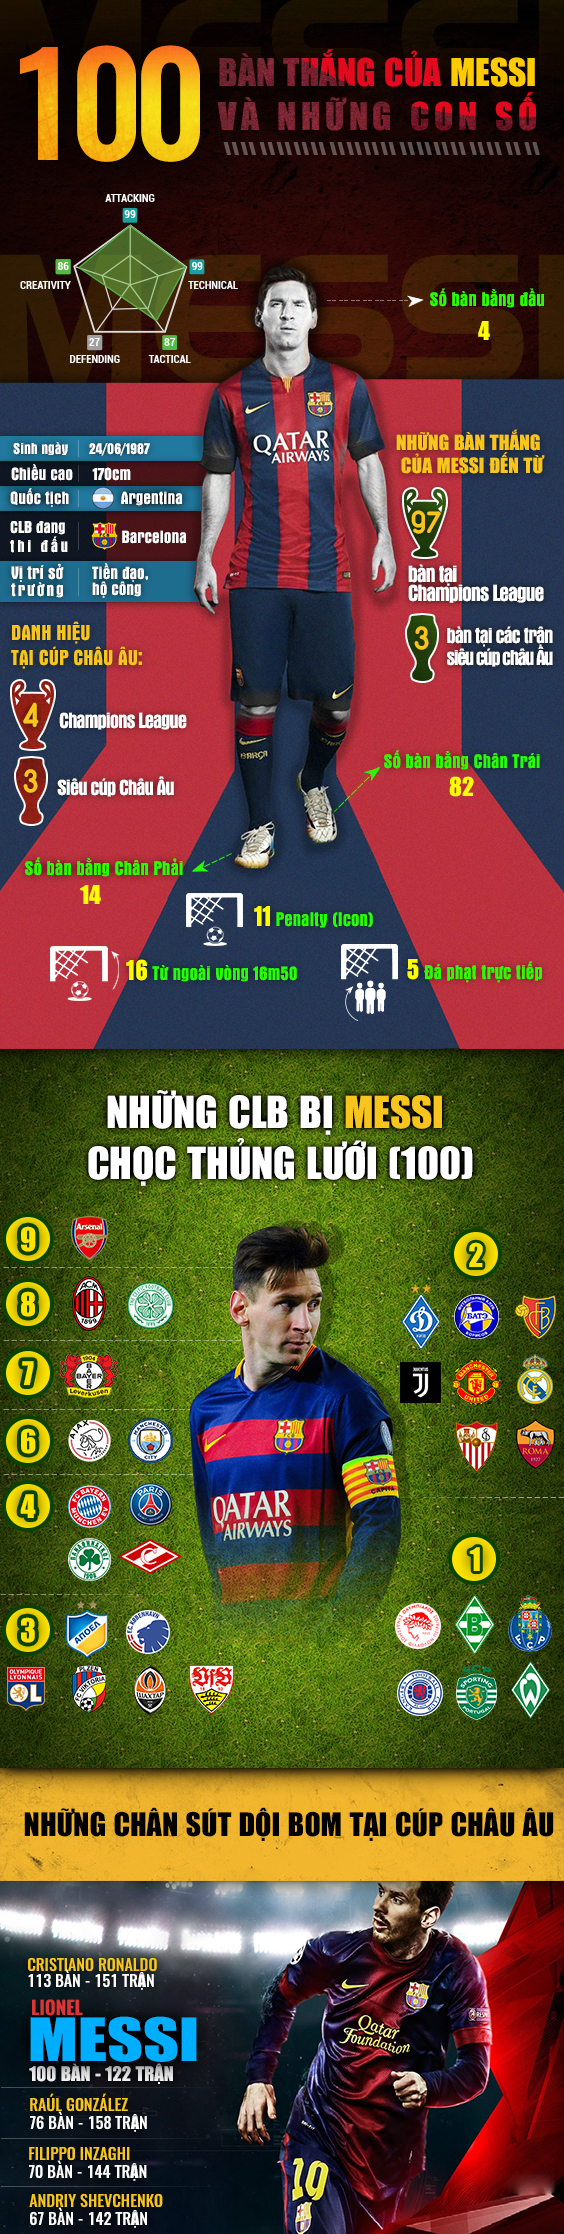 [INFOGRAPHIC] - 100 bàn thắng của Messi và những con số - Bóng Đá